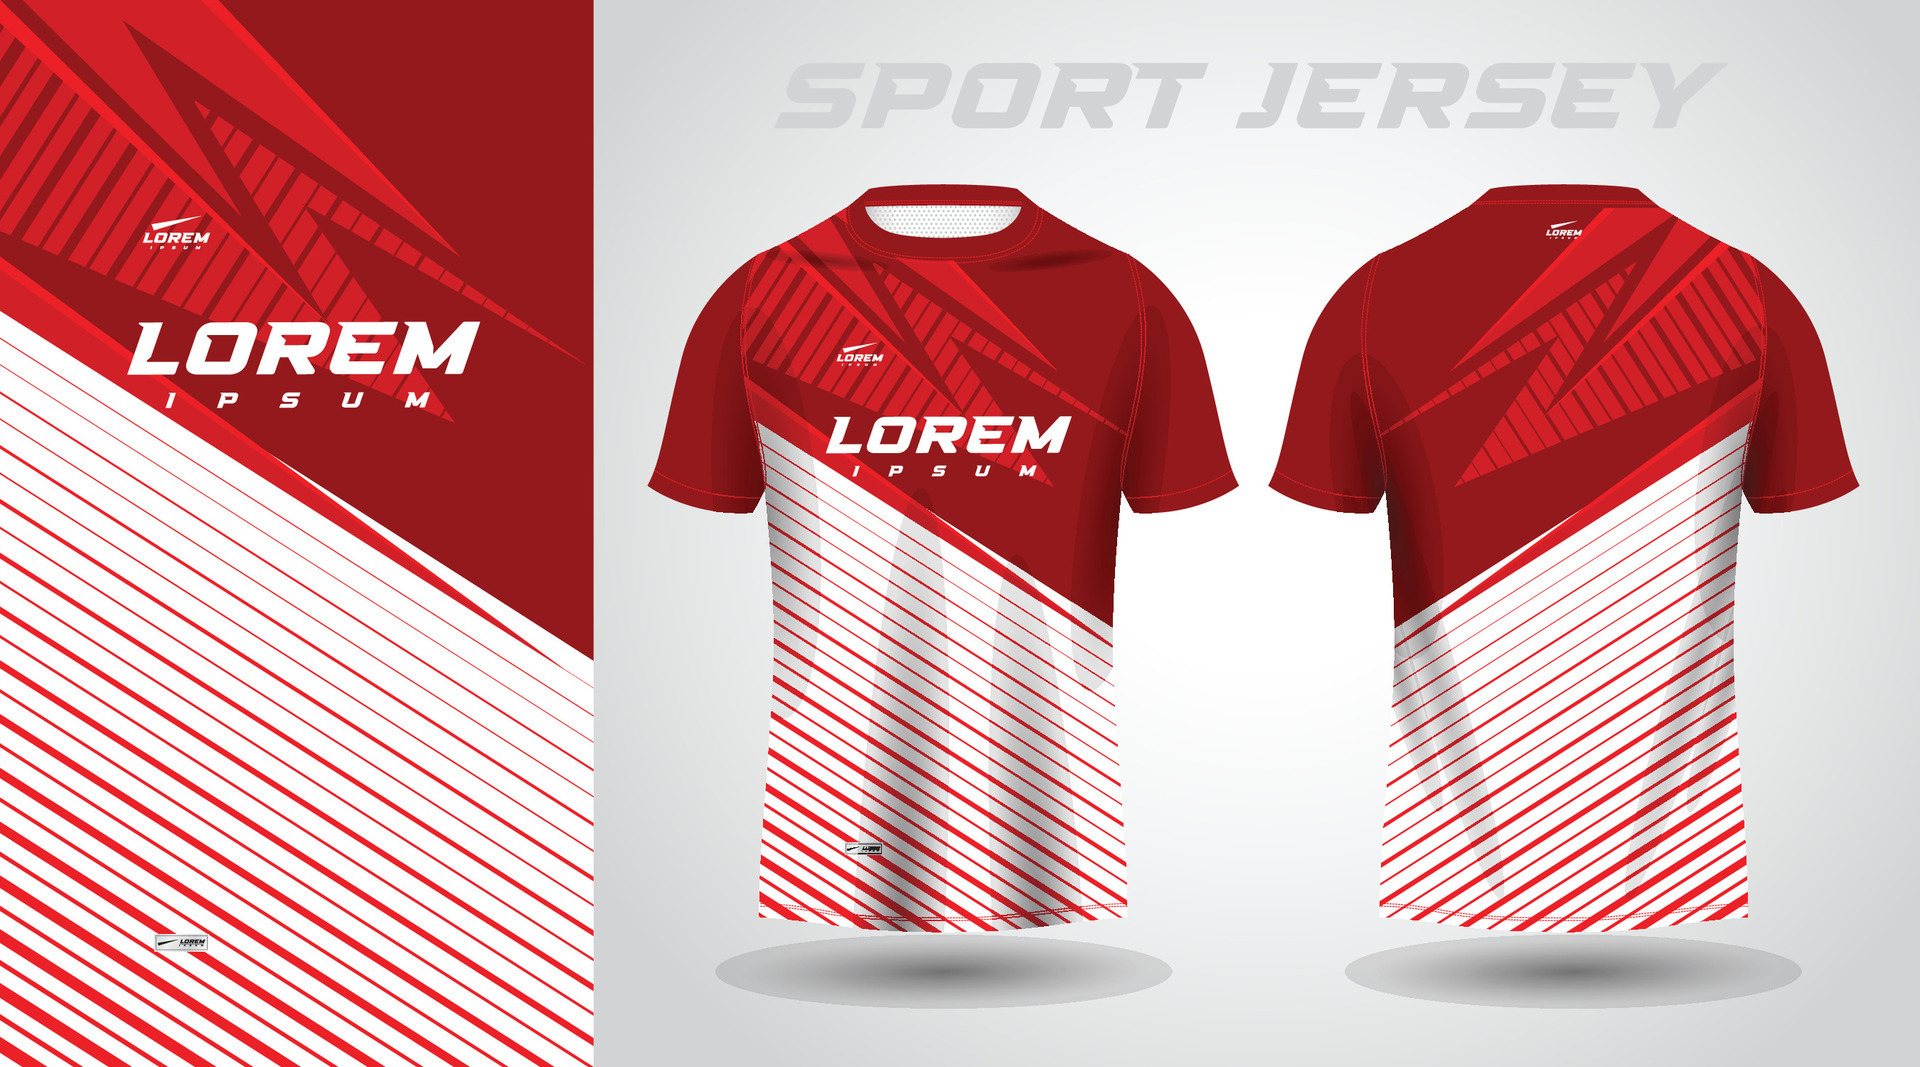 red t-shirt sport jersey design 26468346 Vector Art at Vecteezy